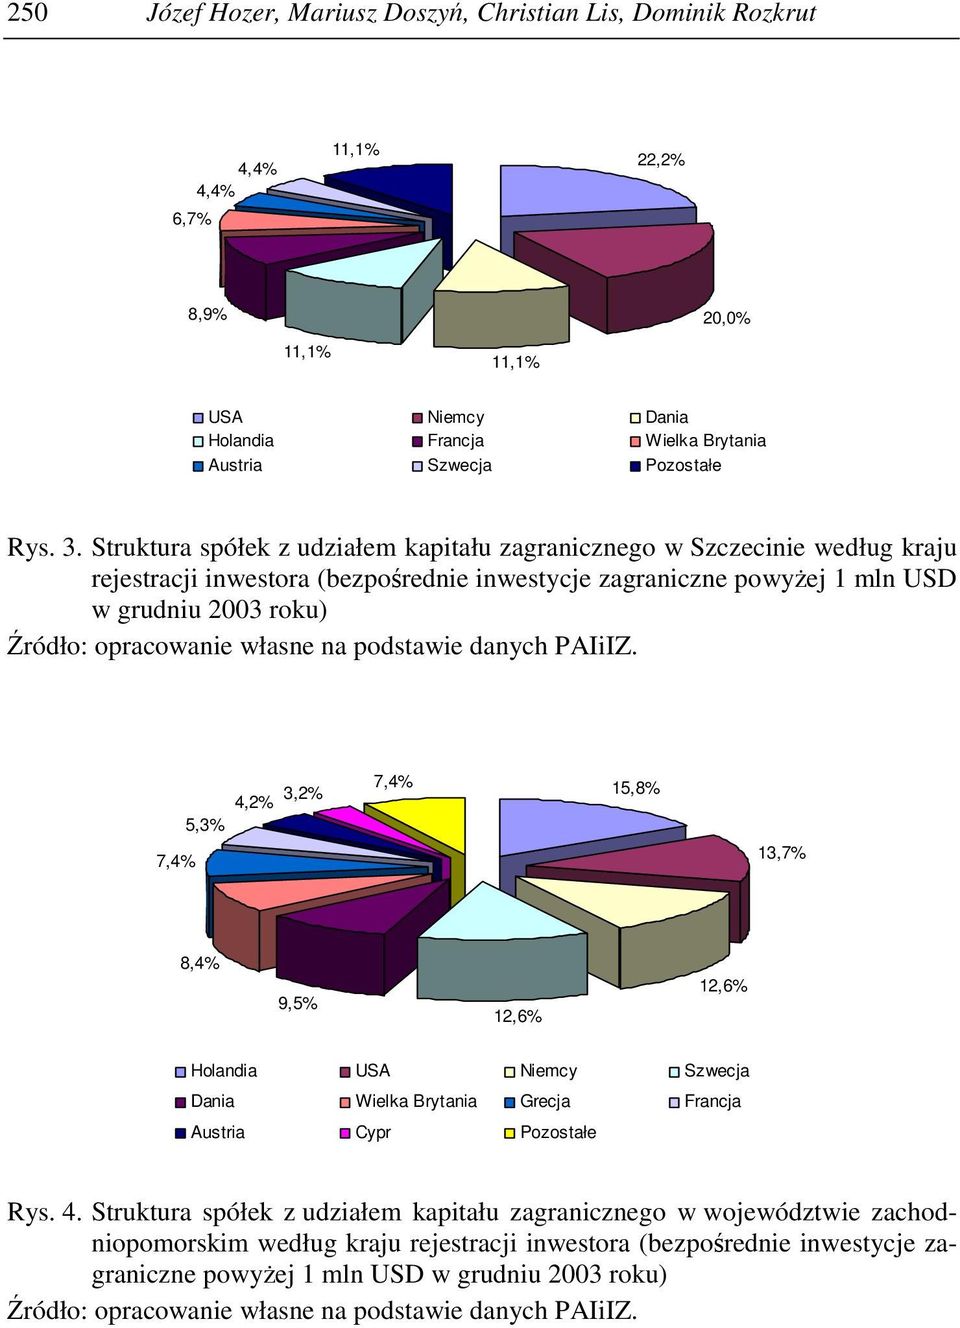 własne na podstawie danych PAIiIZ. 7,%,%,% 7,% 5,% 15,8% 1,7% 8,% 9,5% 1,6% 1,6% Holandia USA Niemcy Szwecja Dania Wielka Brytania Grecja Francja Austria Cypr Pozostałe Rys.